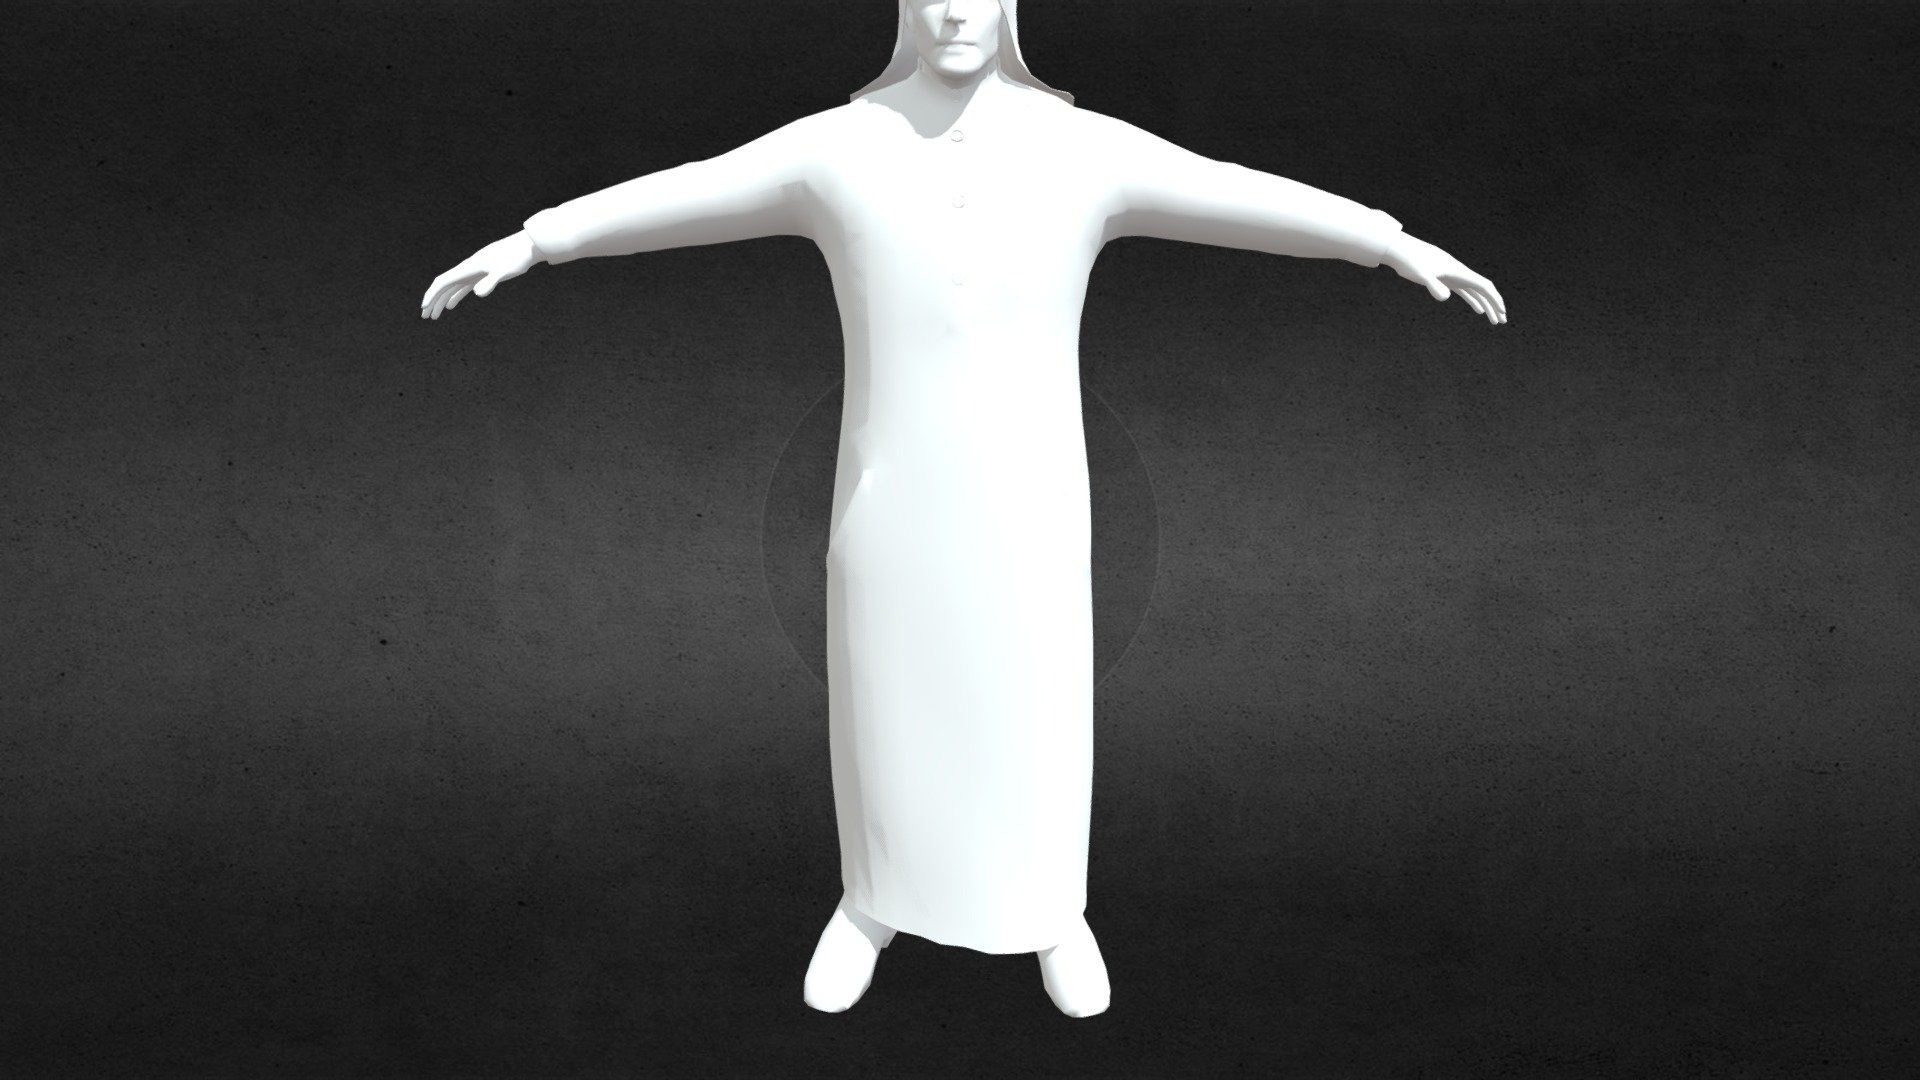 رقص سخيف - Arab Man - Silly Dancing - 3D model by Budots Media (@BudotsMedia) 3d model